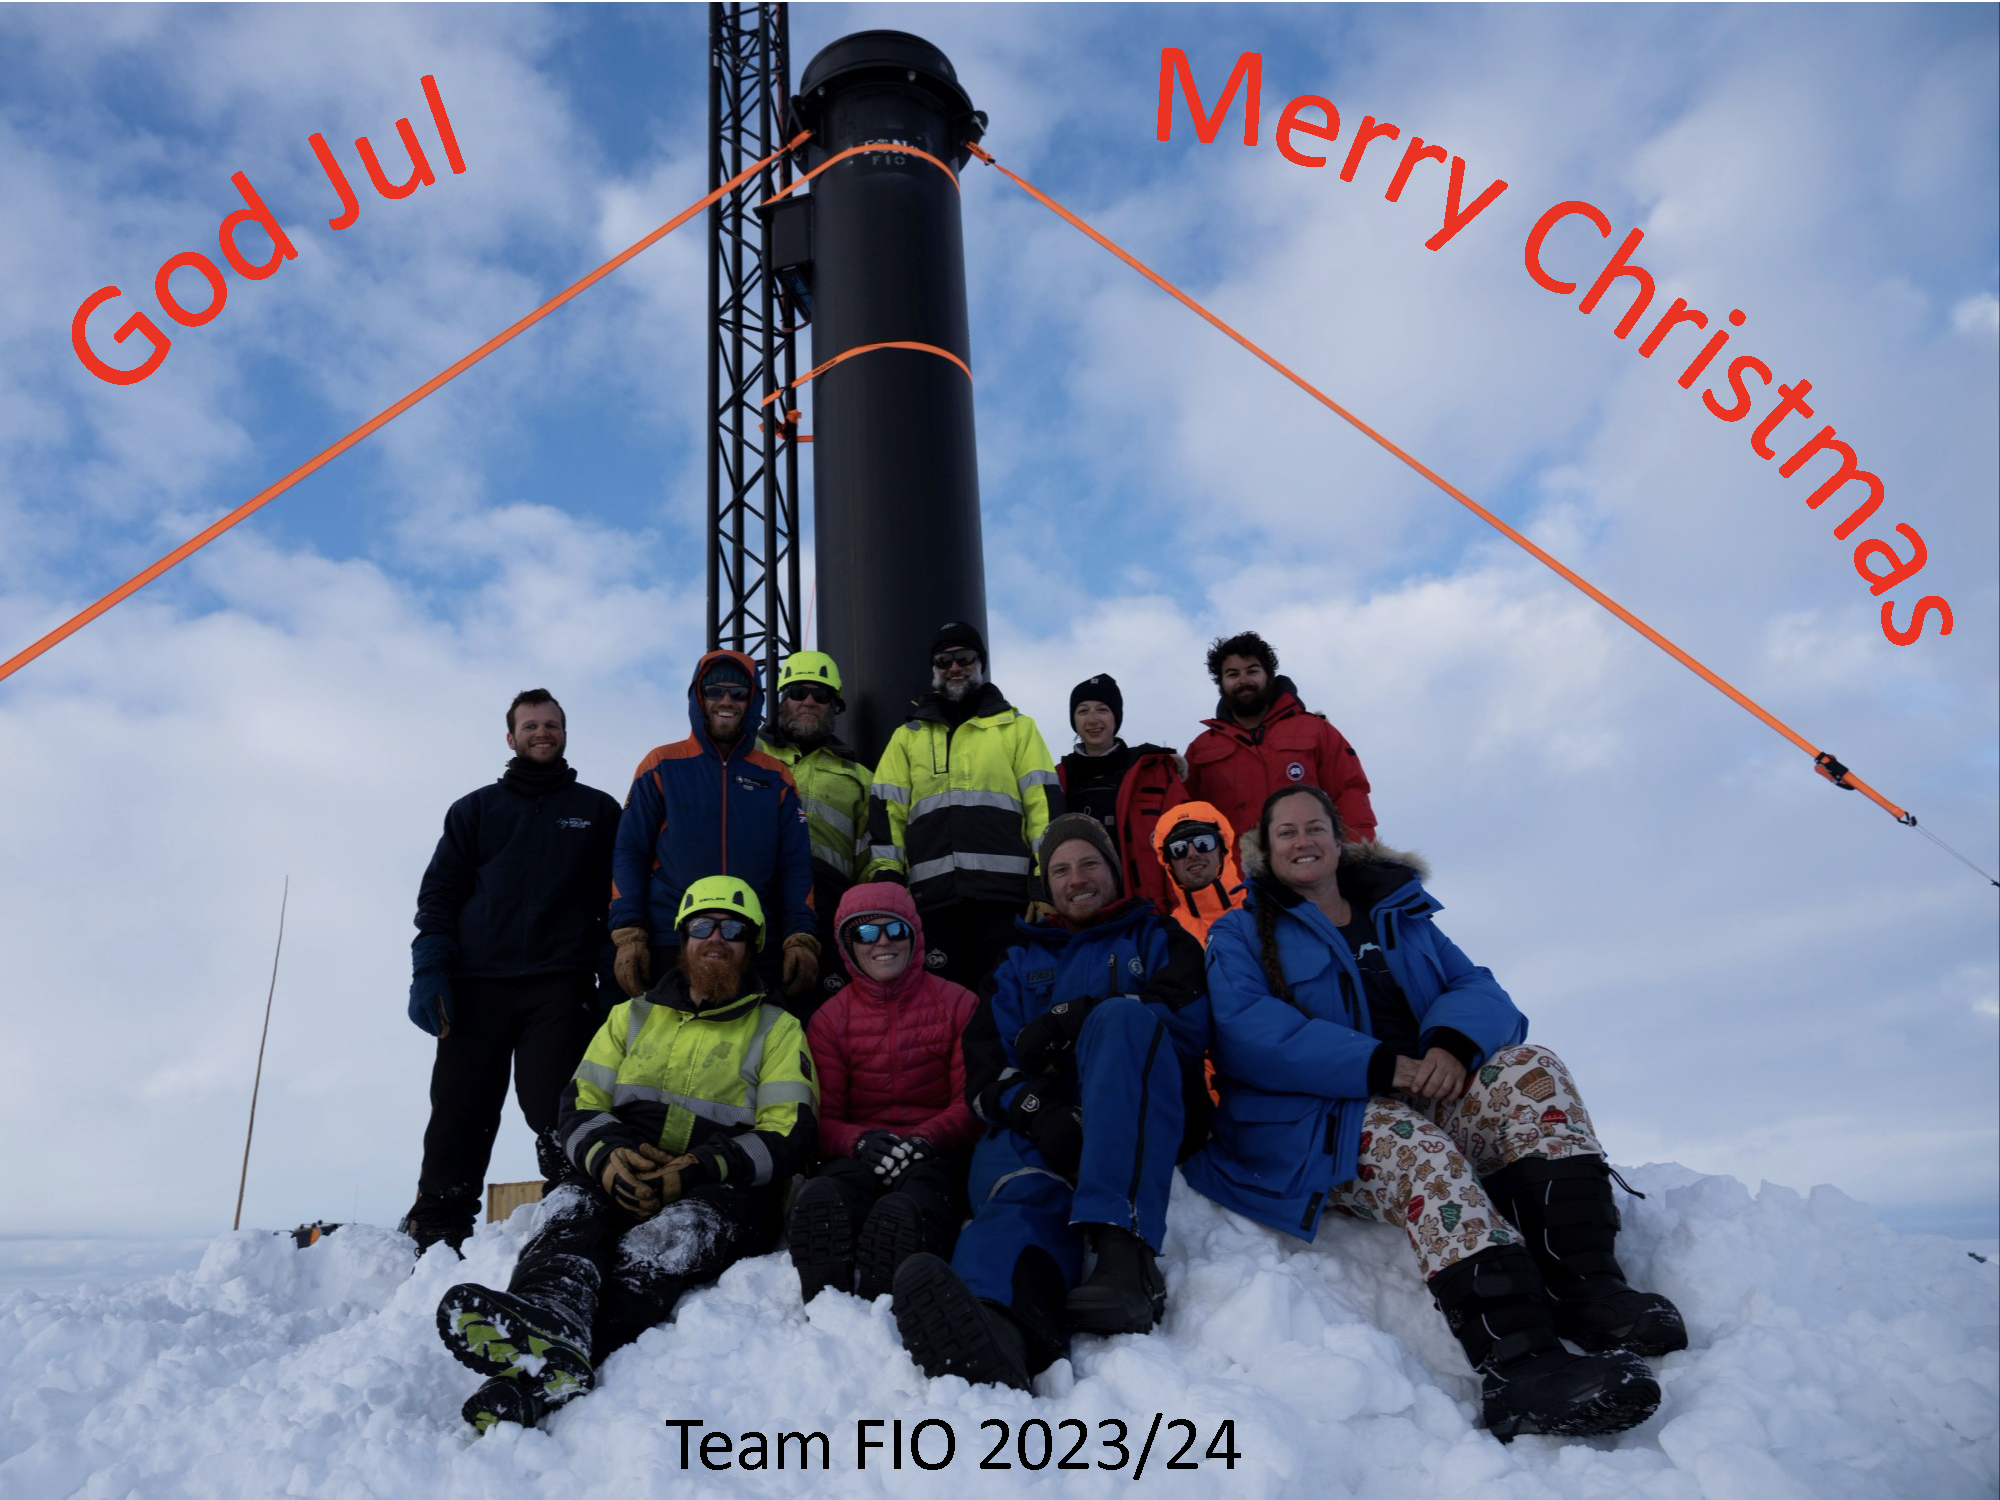 Bilde av forskere på antarktisk med teksten God Jul på venstre side og Merry Christmas på høyre